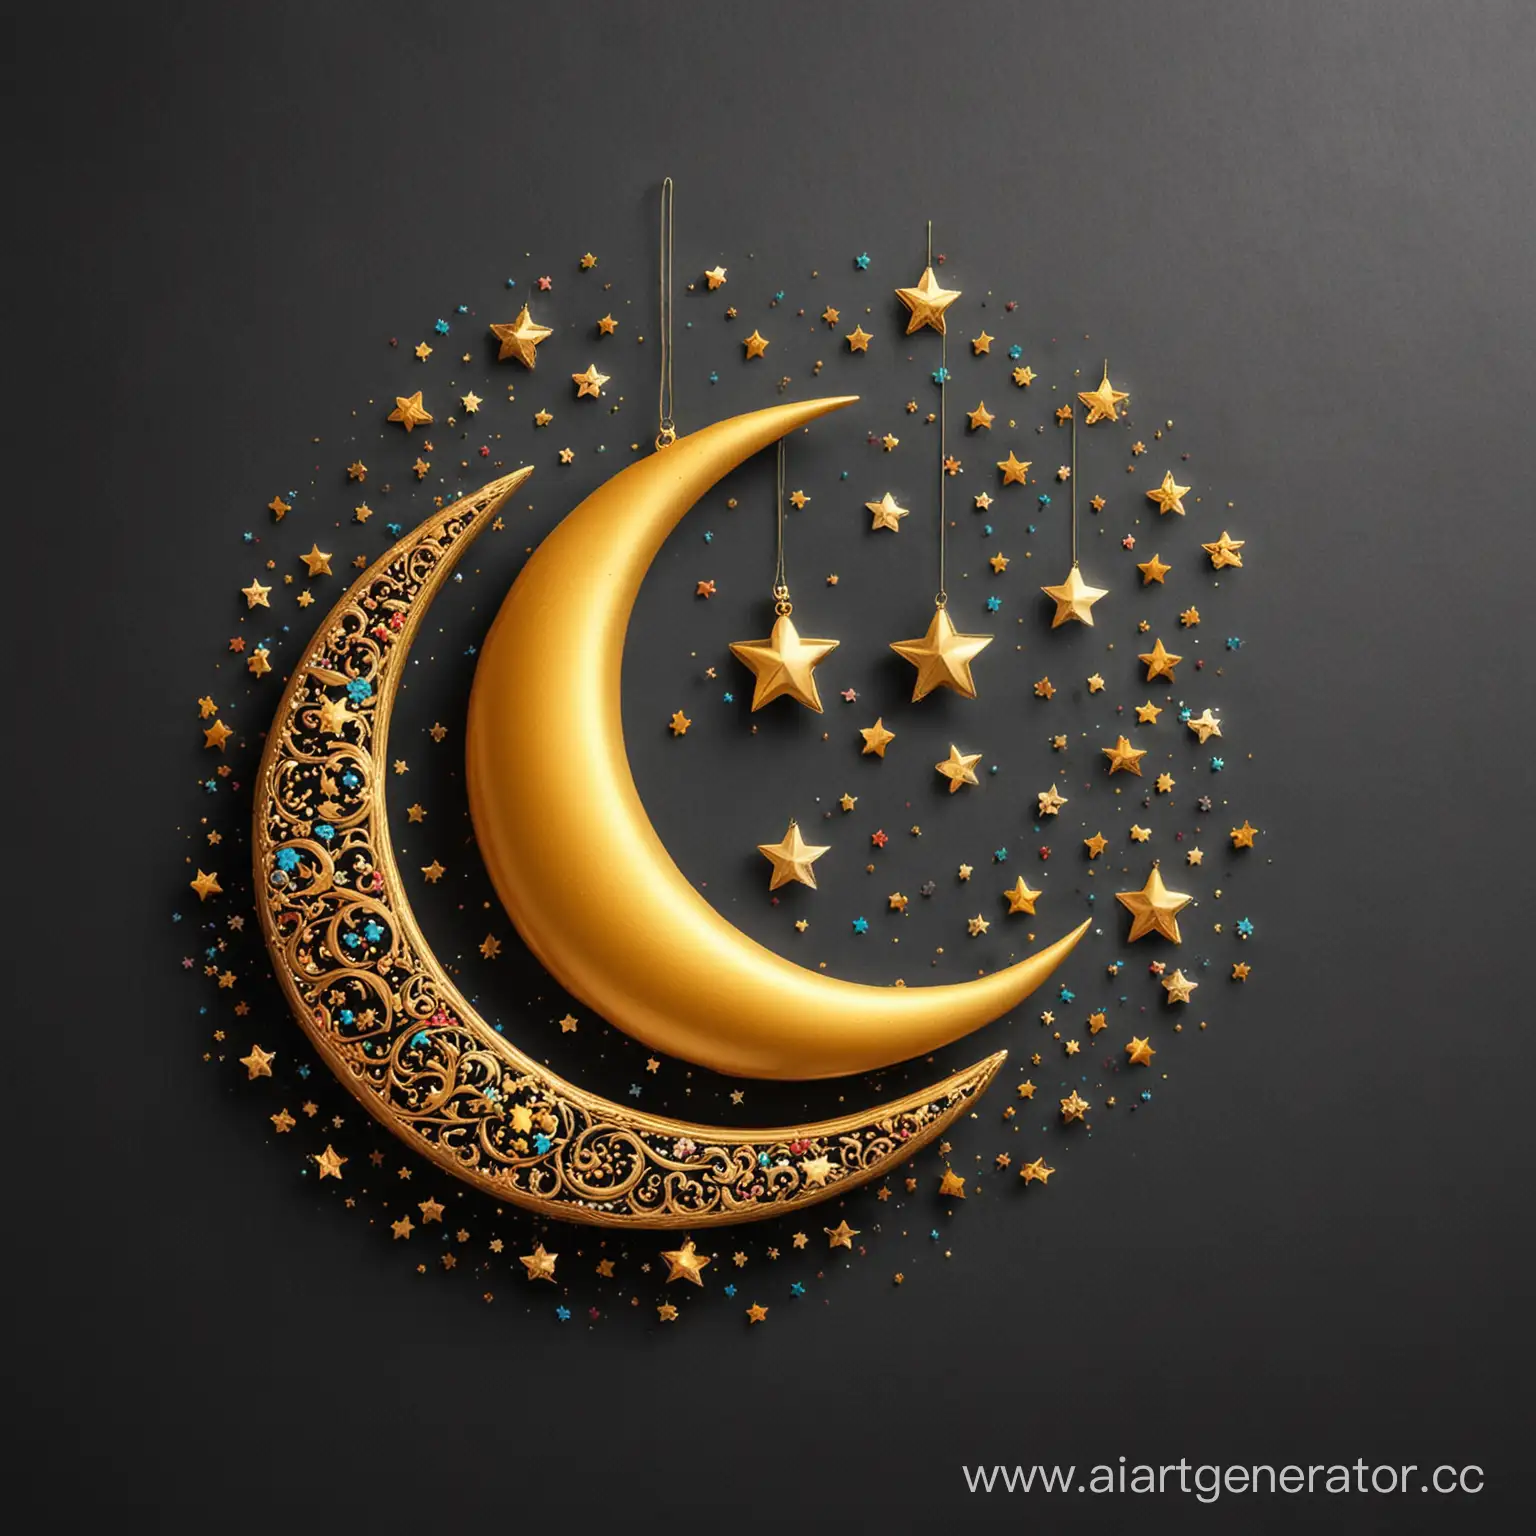 Joyful-Eid-Mubarak-Stars-and-Golden-Moon-Celebration-on-White-Background